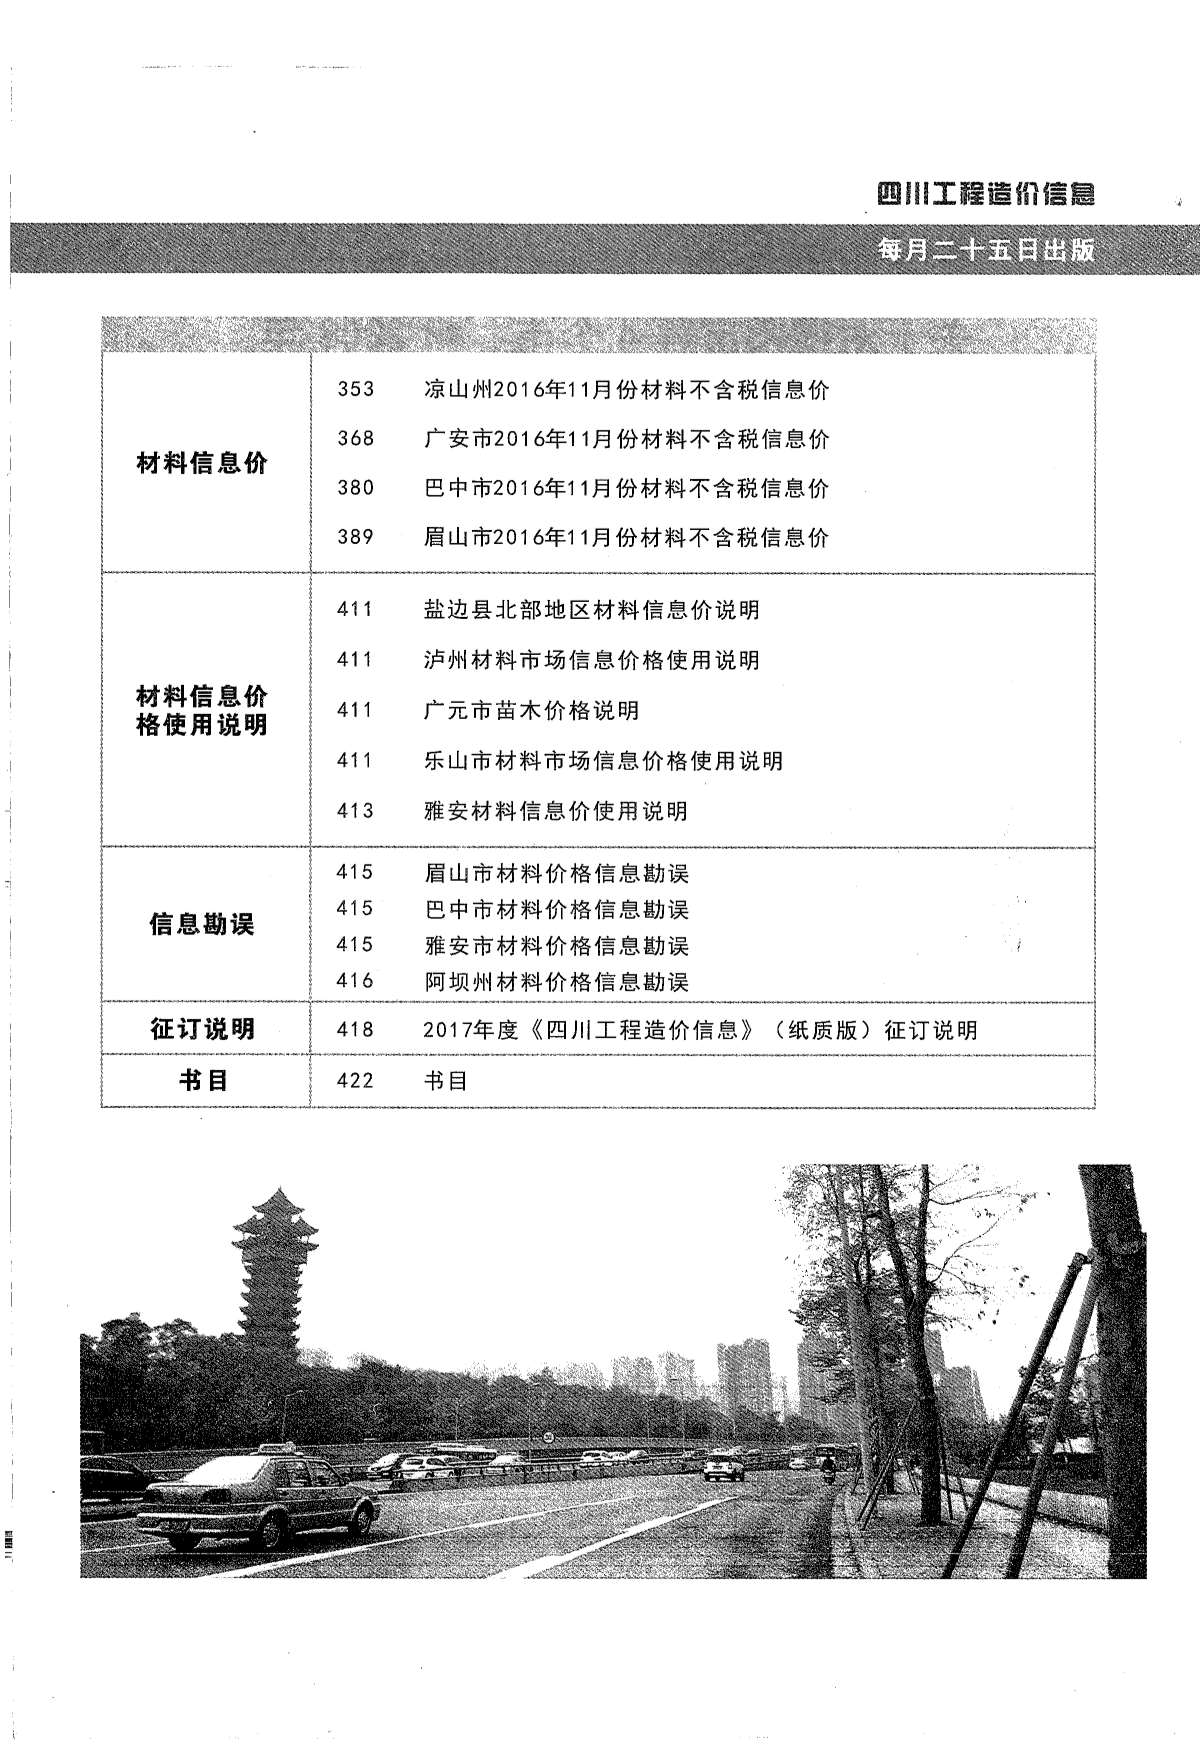 四川省2016年12月工程造价信息造价库信息价